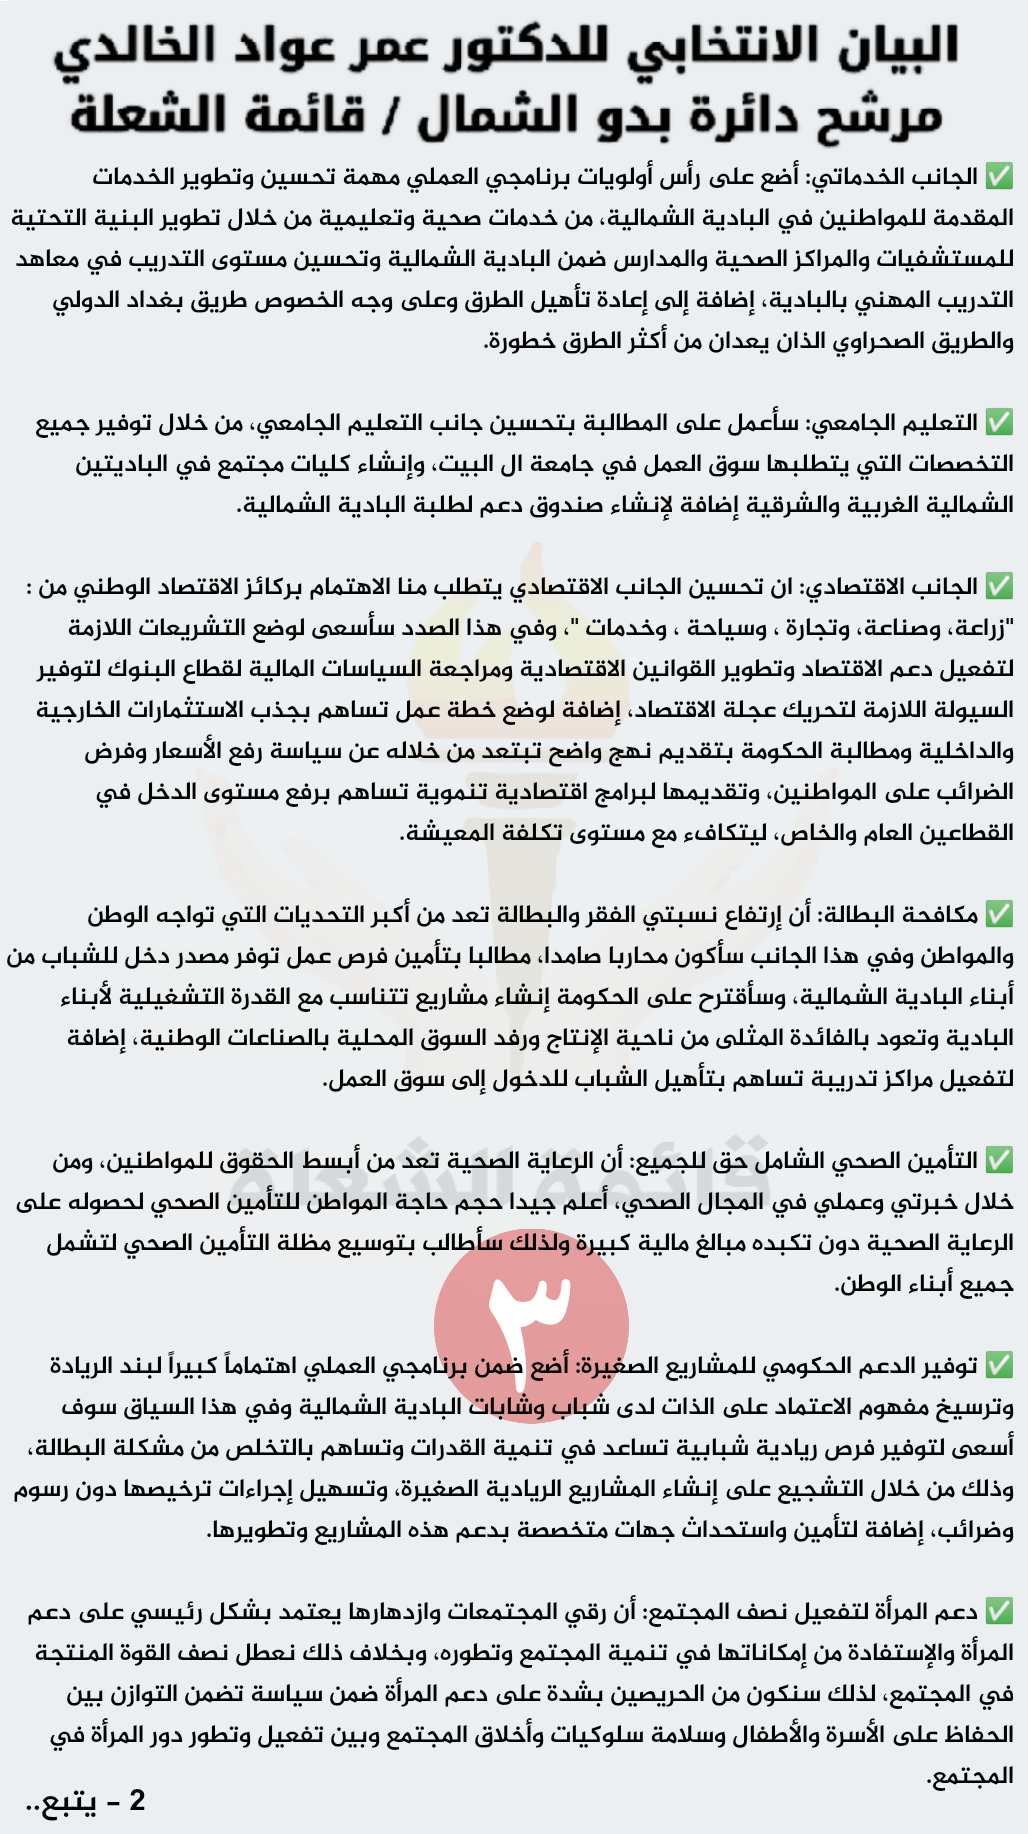 البيان الإنتخابي للدكتور عمر عواد الخالدي / مرشح دائرة بدو الشمال / قائمة الشعلة